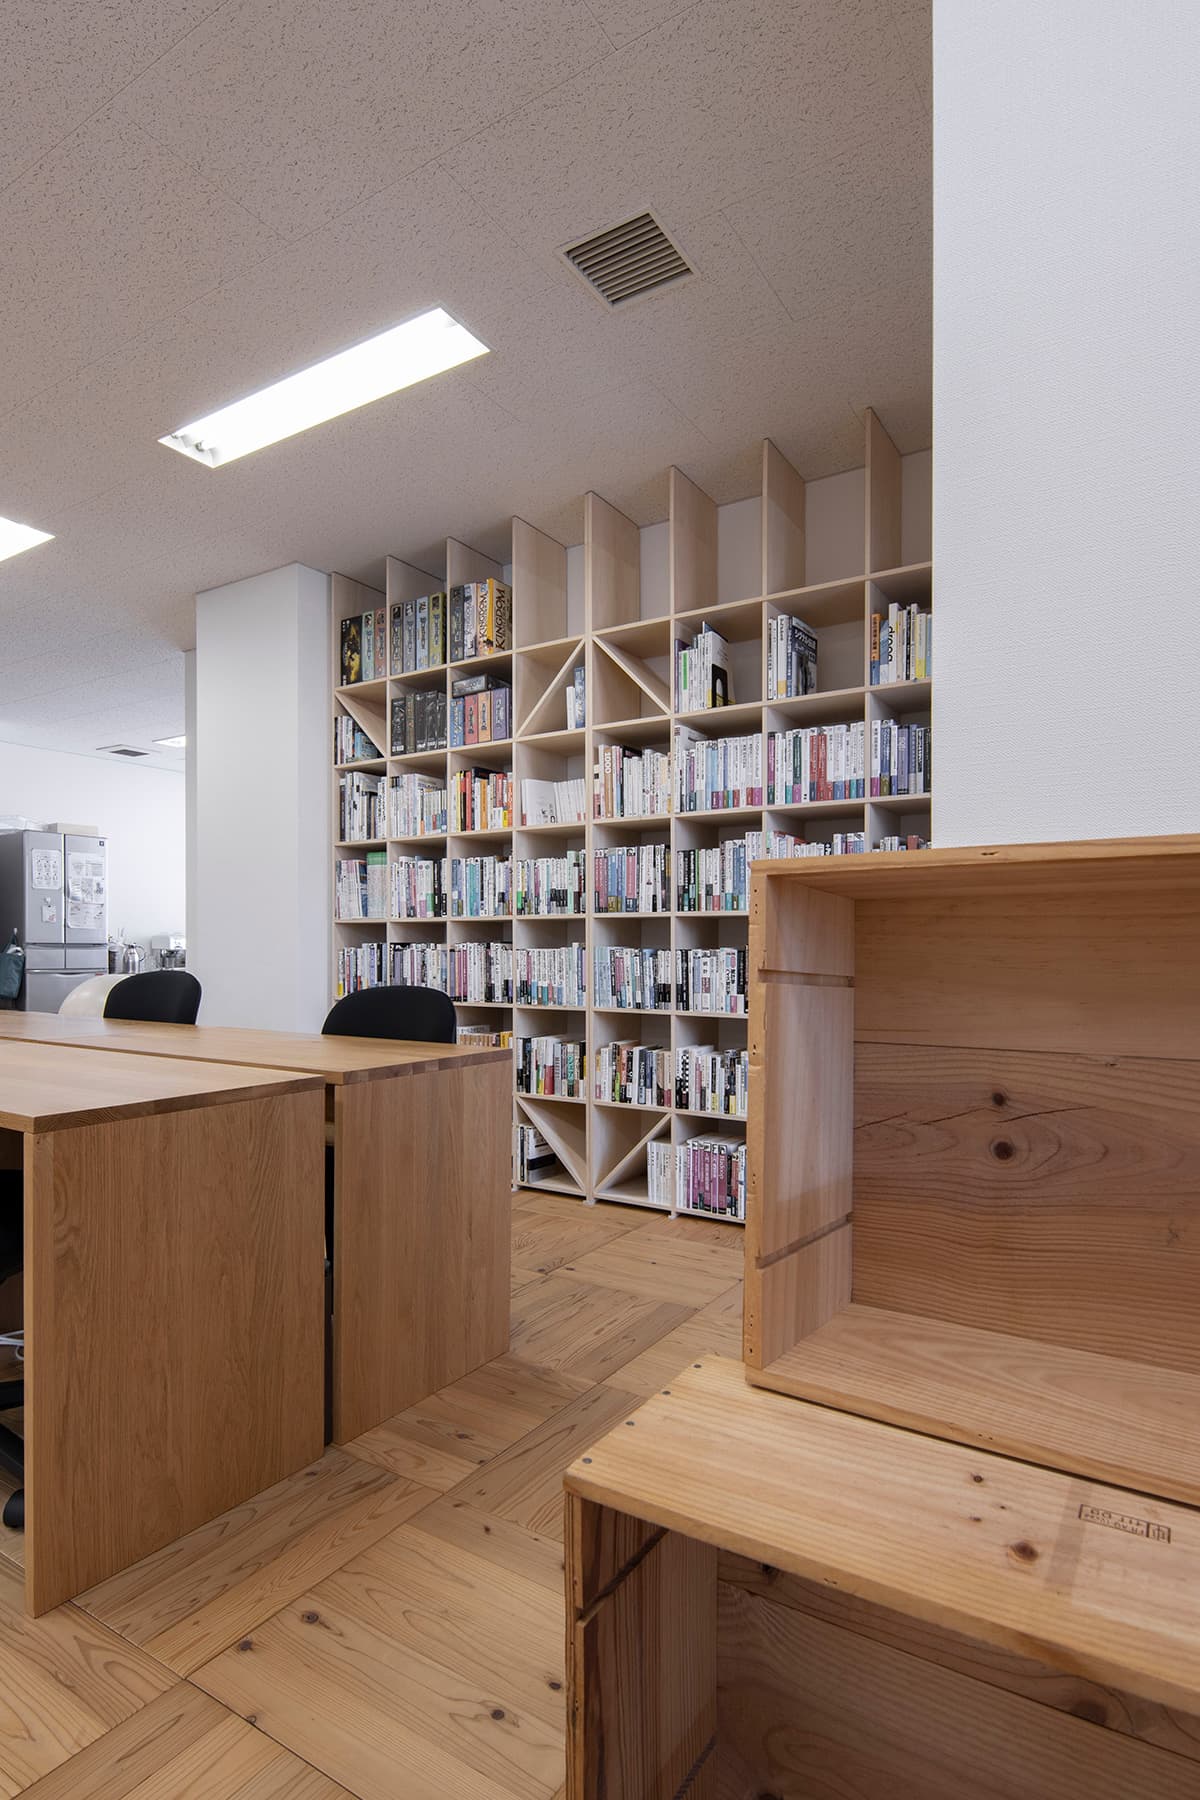 株式会社テンクー様のオフィス – Shelf 壁一面の本棚 